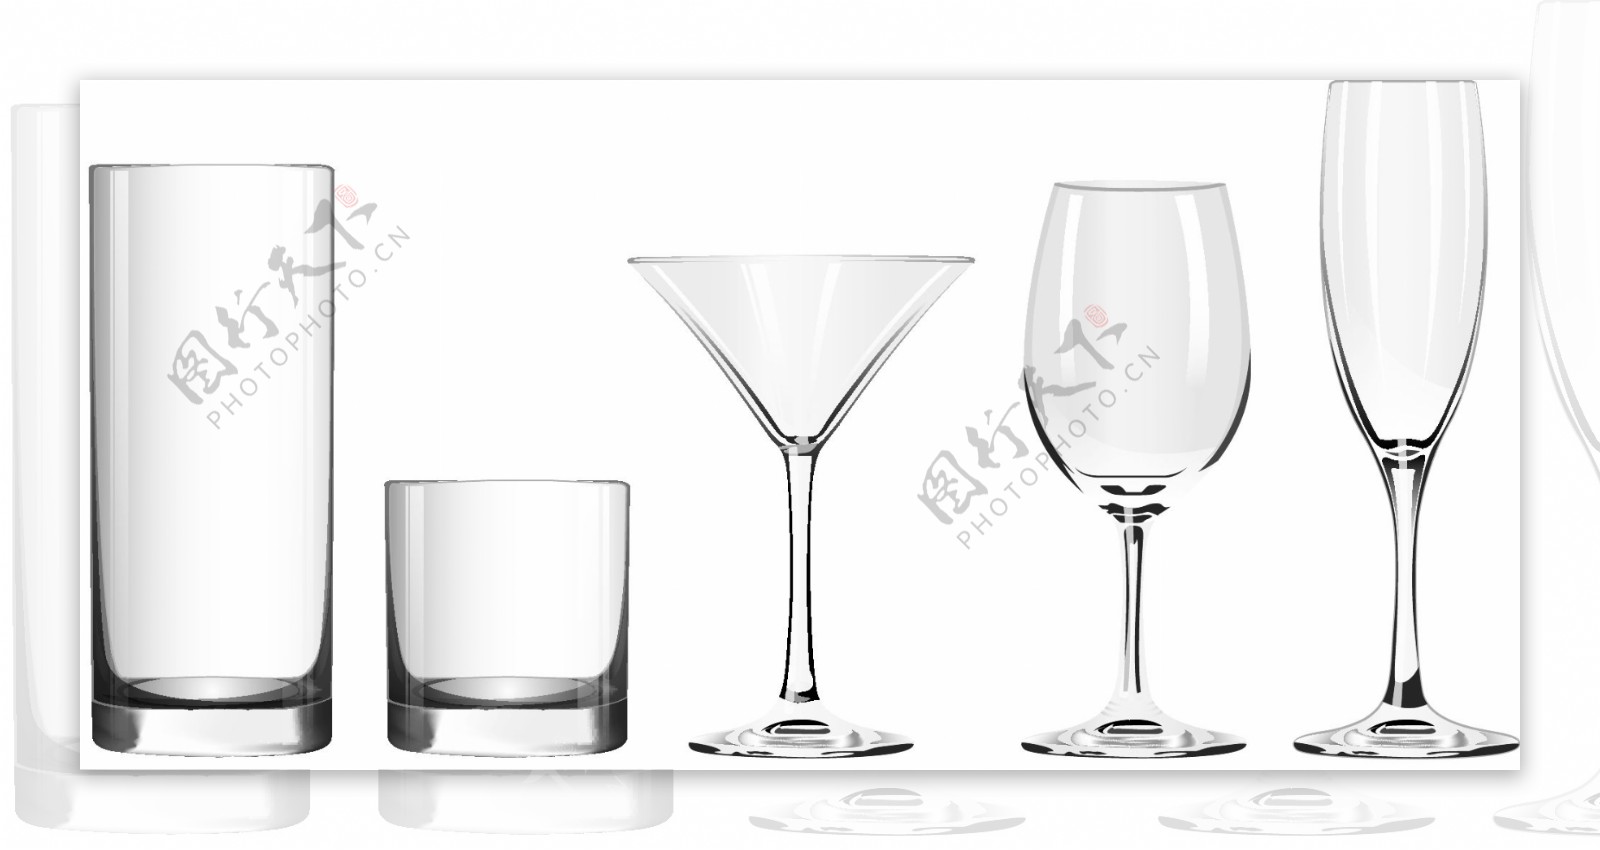 玻璃杯和高脚杯矢量素材